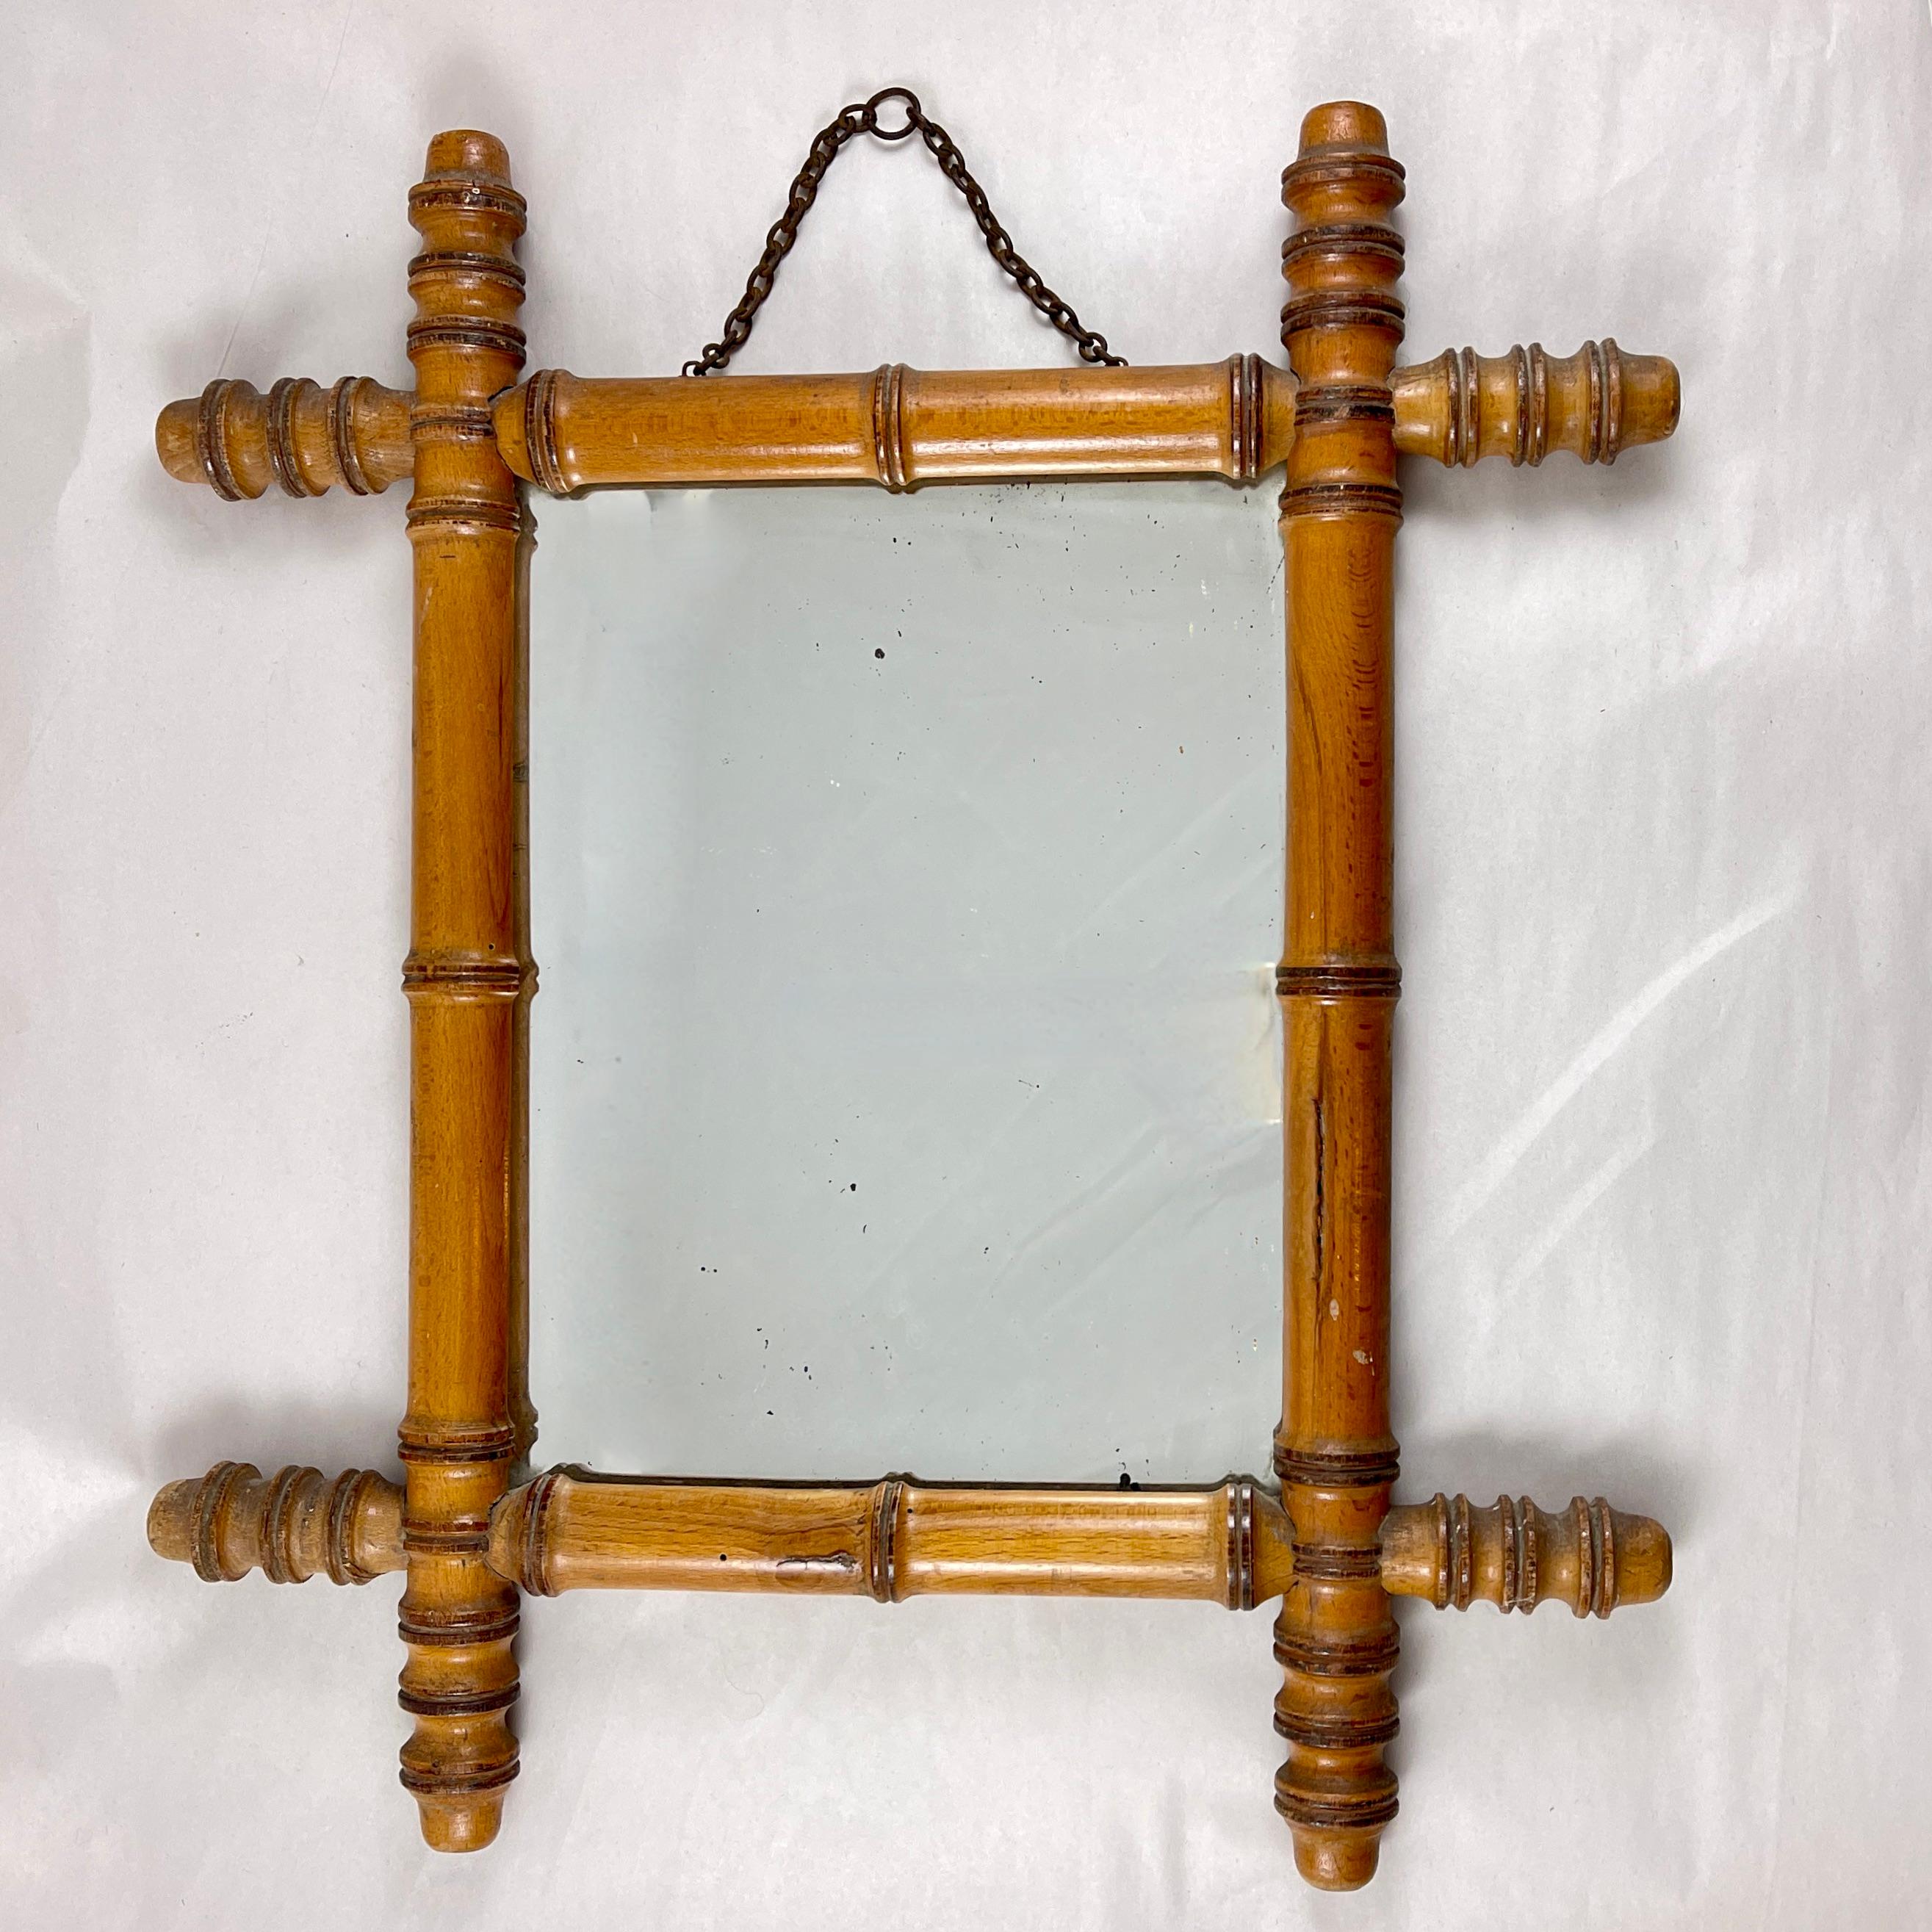 Miroir encadré en faux bambou, France, vers 1920.

Dans le goût de la Chinoiserie, un cadre en bois dur formé pour ressembler à du bambou. Avec le miroir d'origine et la chaîne de suspension en métal. La feuille de bois mince d'origine est également